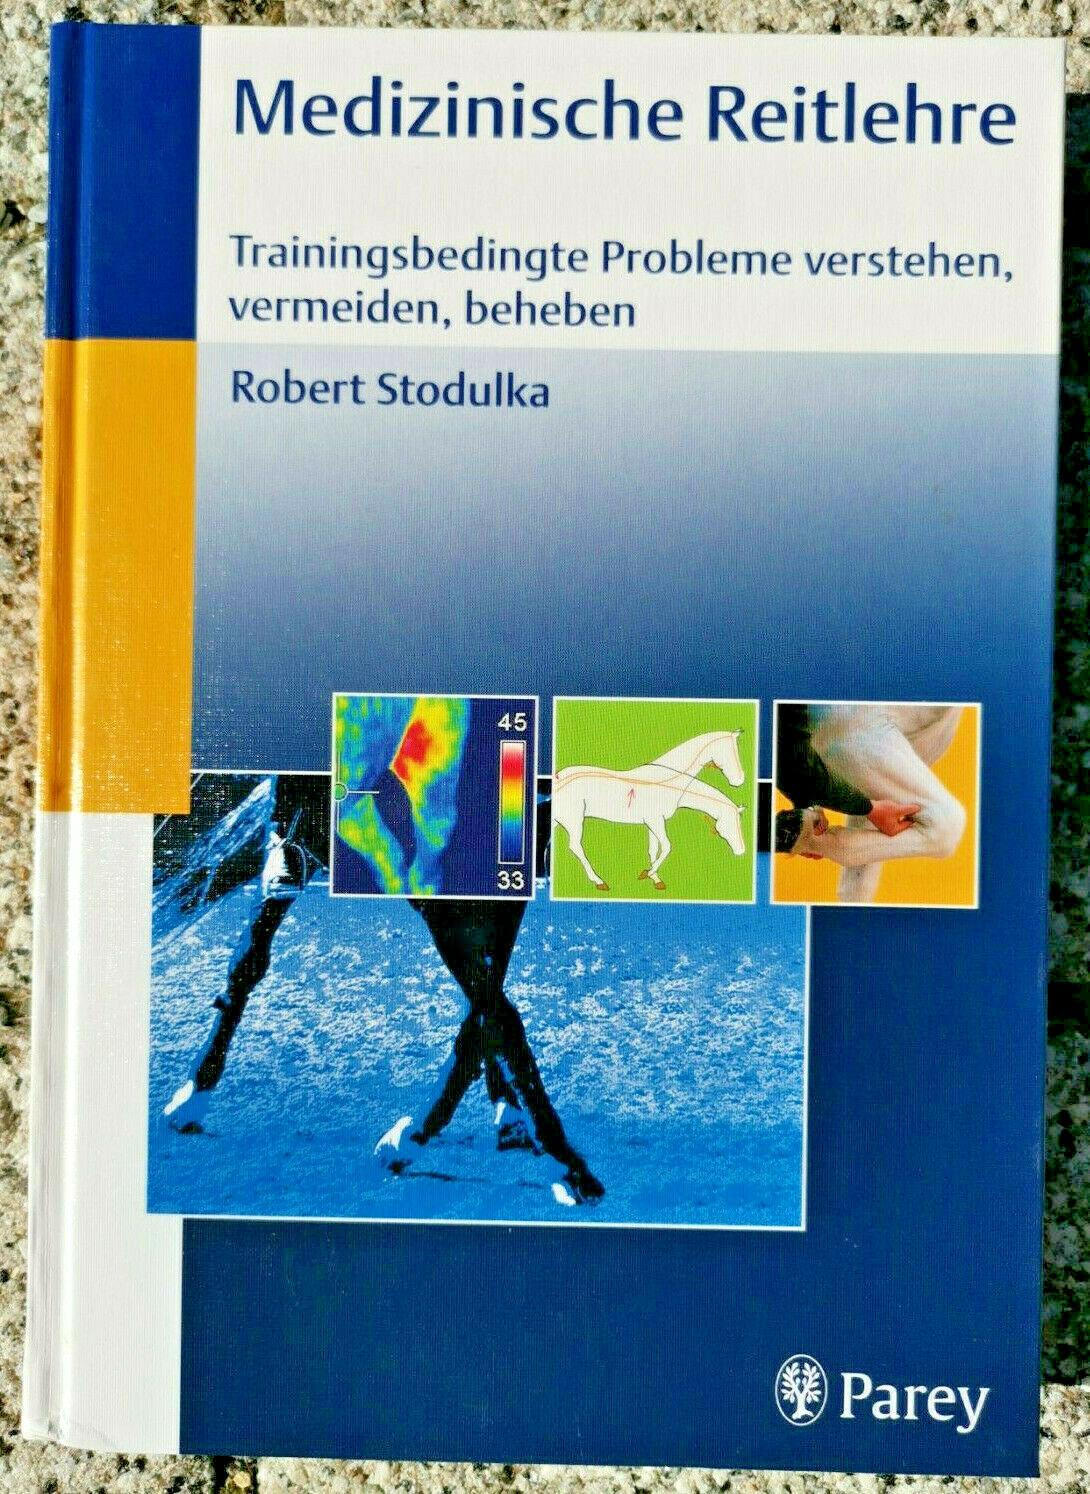 Medizinische Reitlehre: Trainingsbedingte Probleme verstehen, vermeiden, beheben, Stodulka, Robert